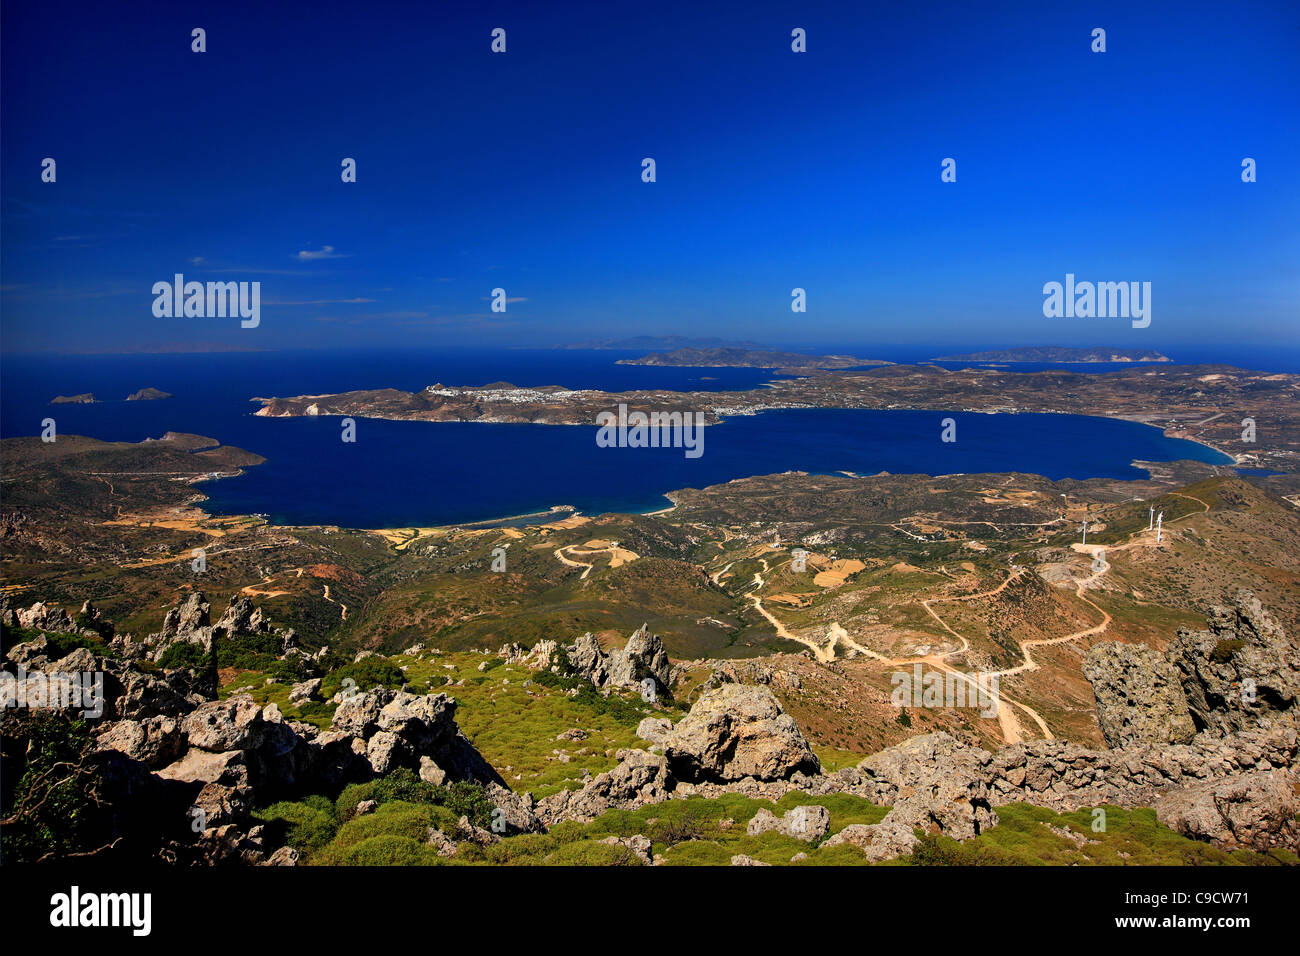 Vue panoramique sur le golfe de Milos, l'un des plus grands ports naturels de la Méditerranée. Cyclades, Grèce Banque D'Images